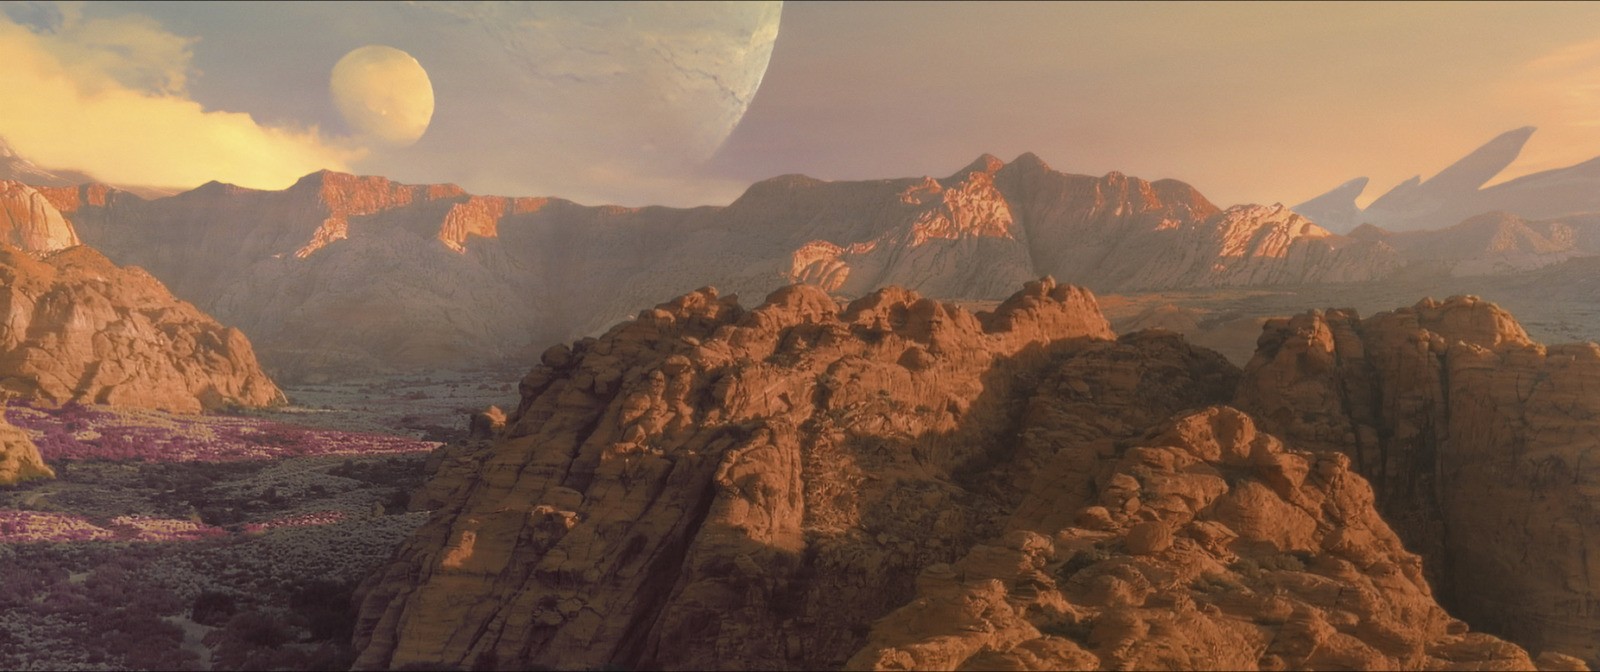 《无主之地》电影剧照精彩复原潘多拉星球景象